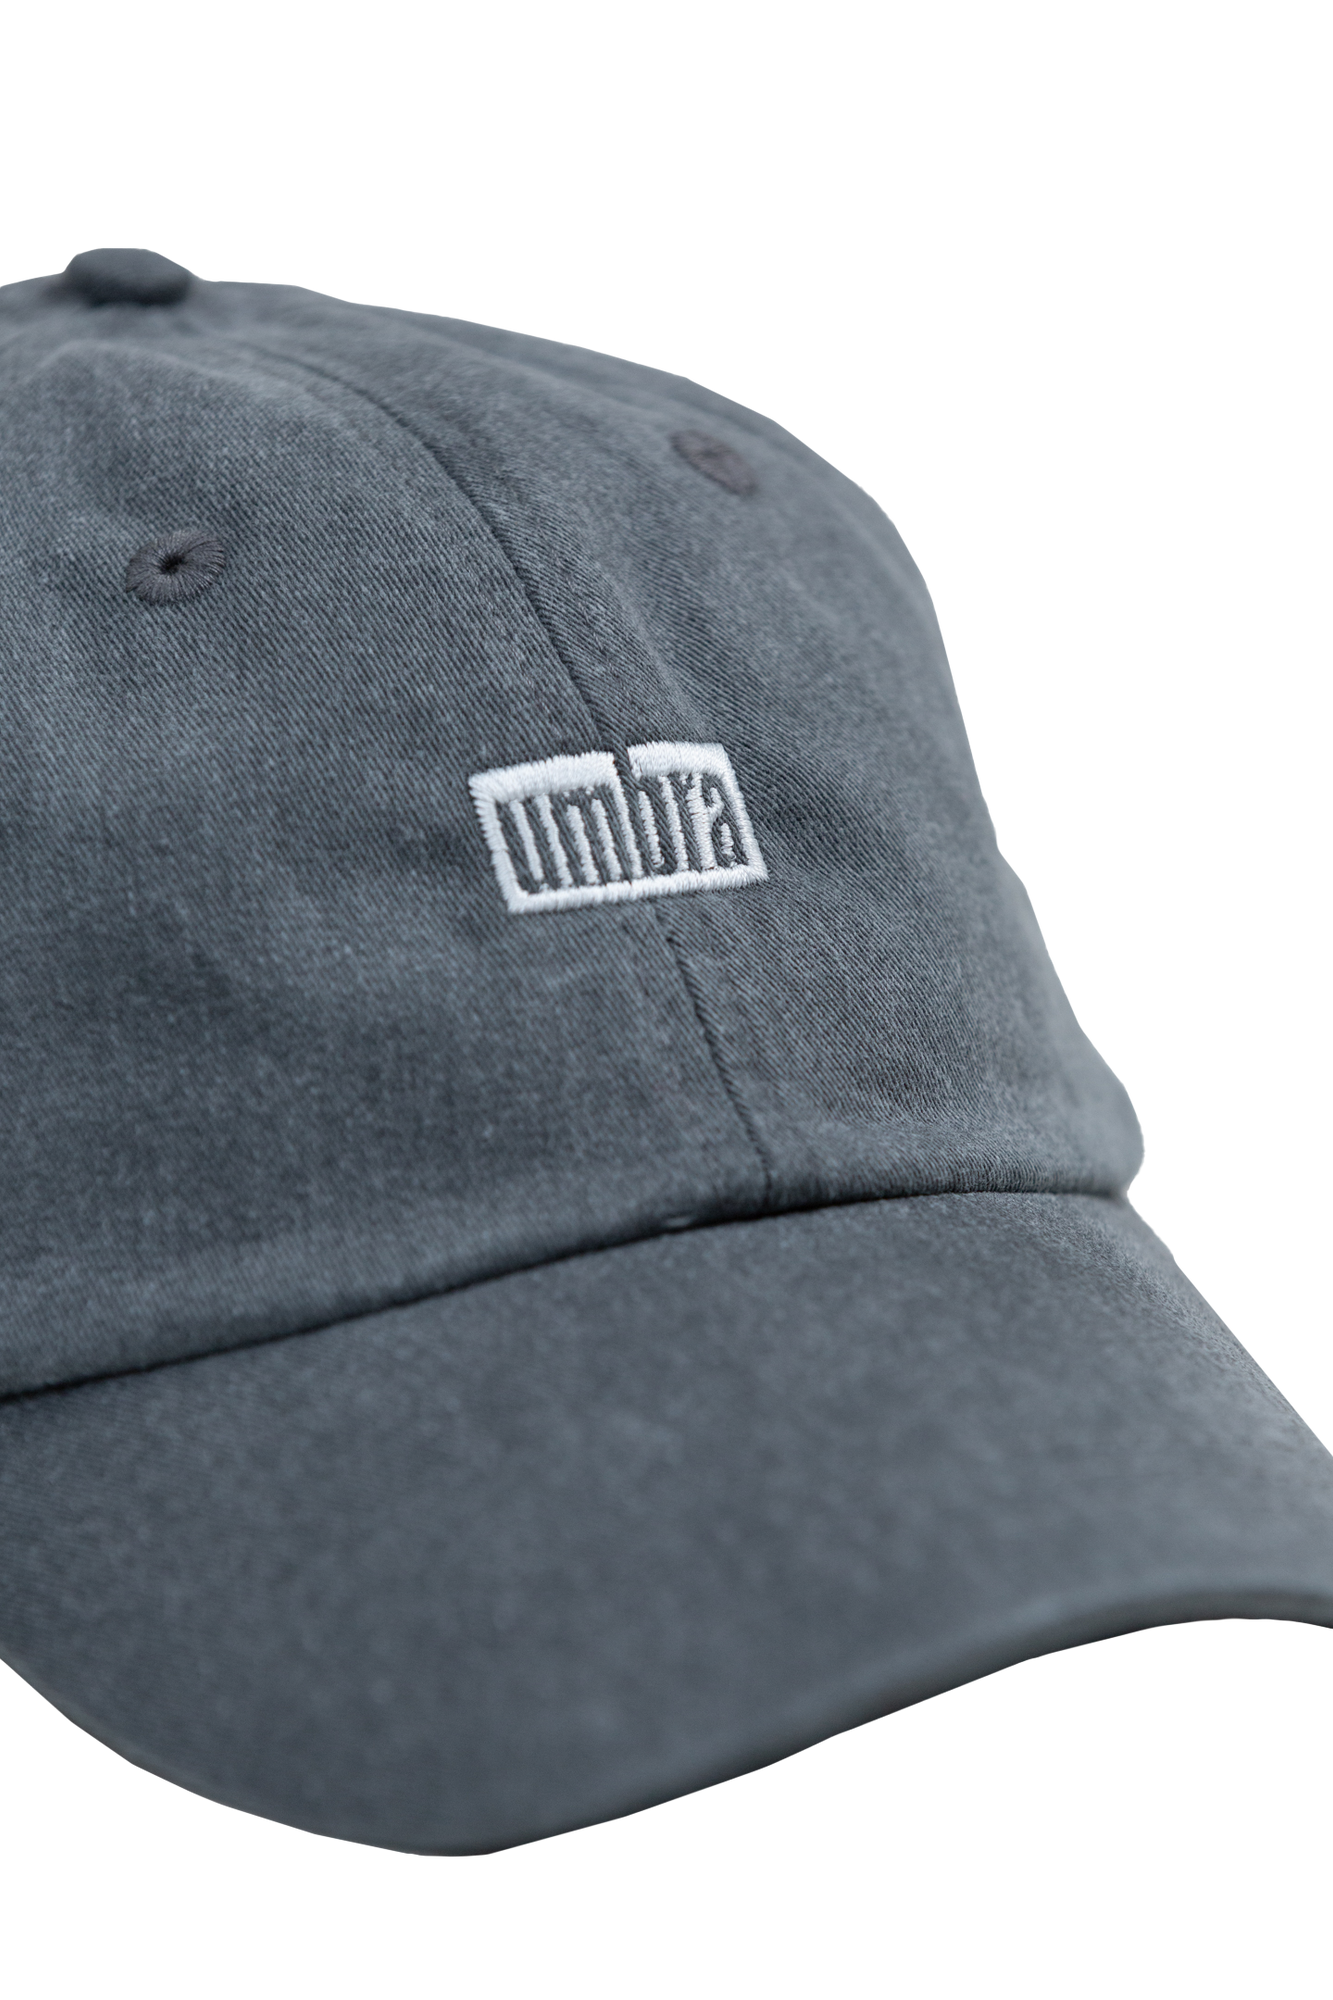 Umbra Dad Hat